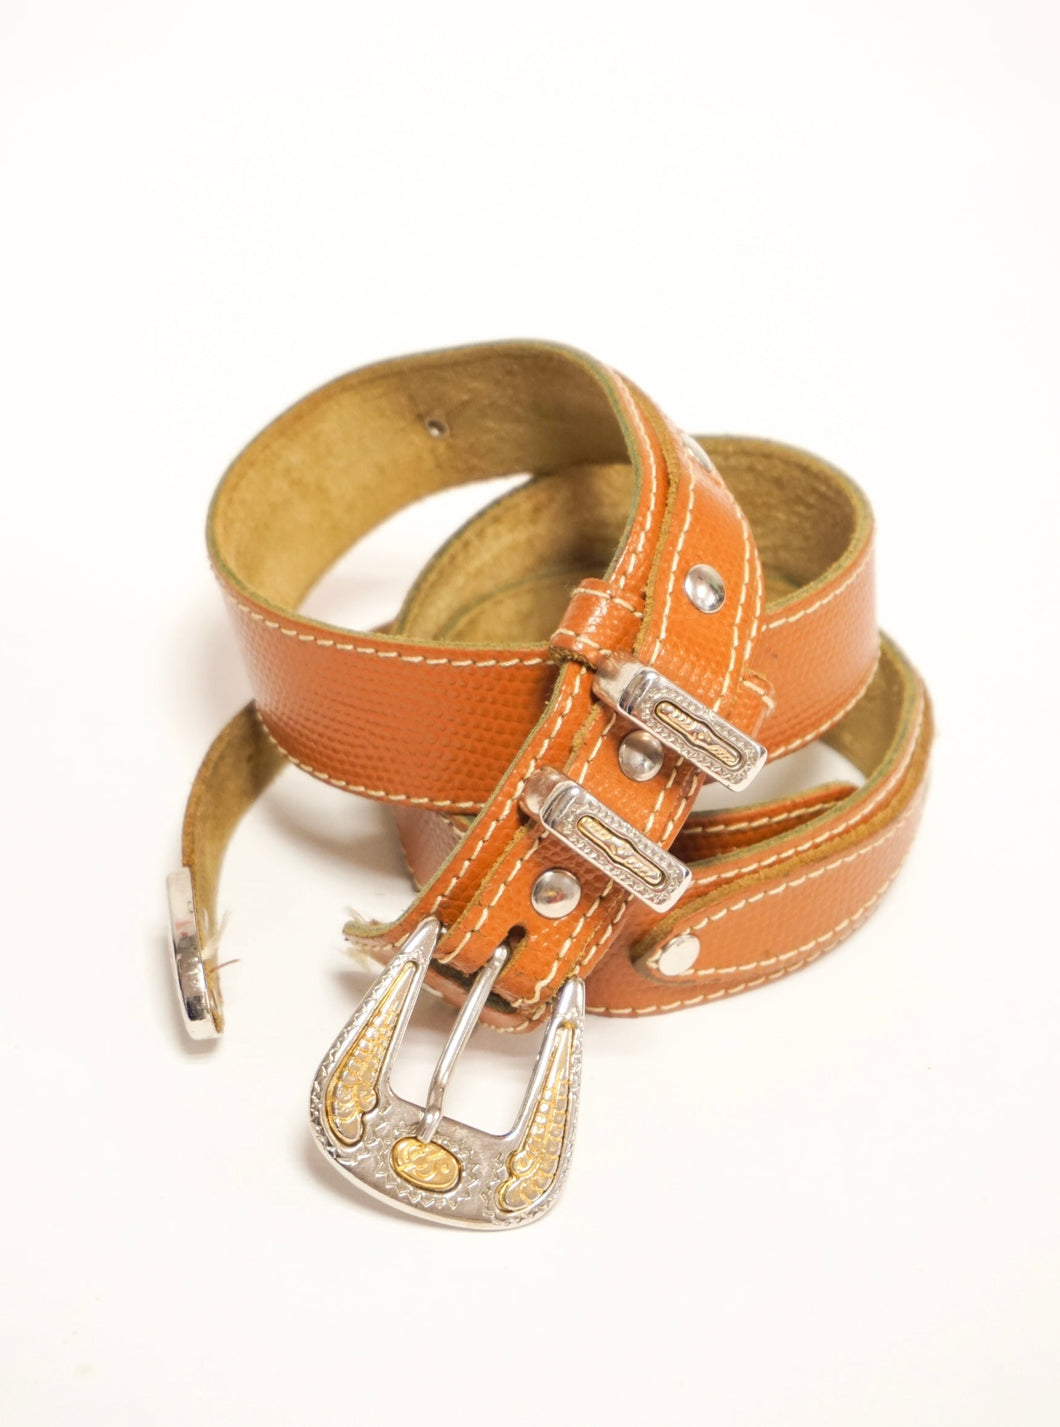 Black leather dog buckle belt ≤82cm